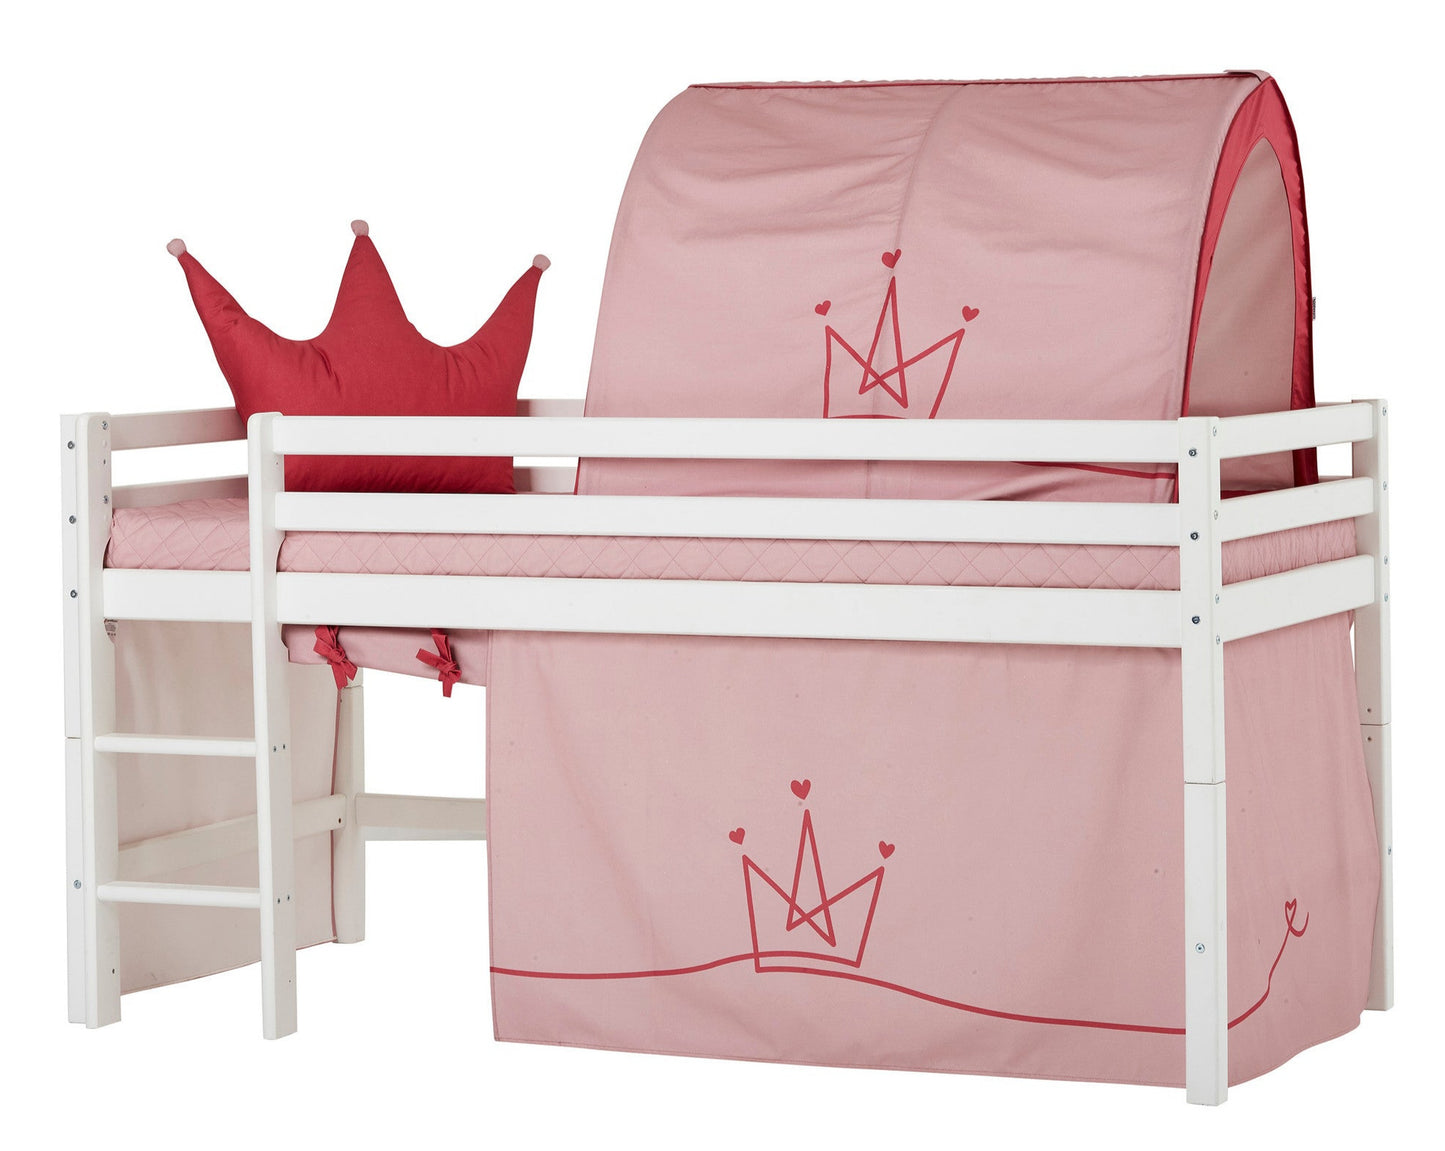 Принцесса - Занавес для полуторной и двухъярусной кровати - 90x200 см